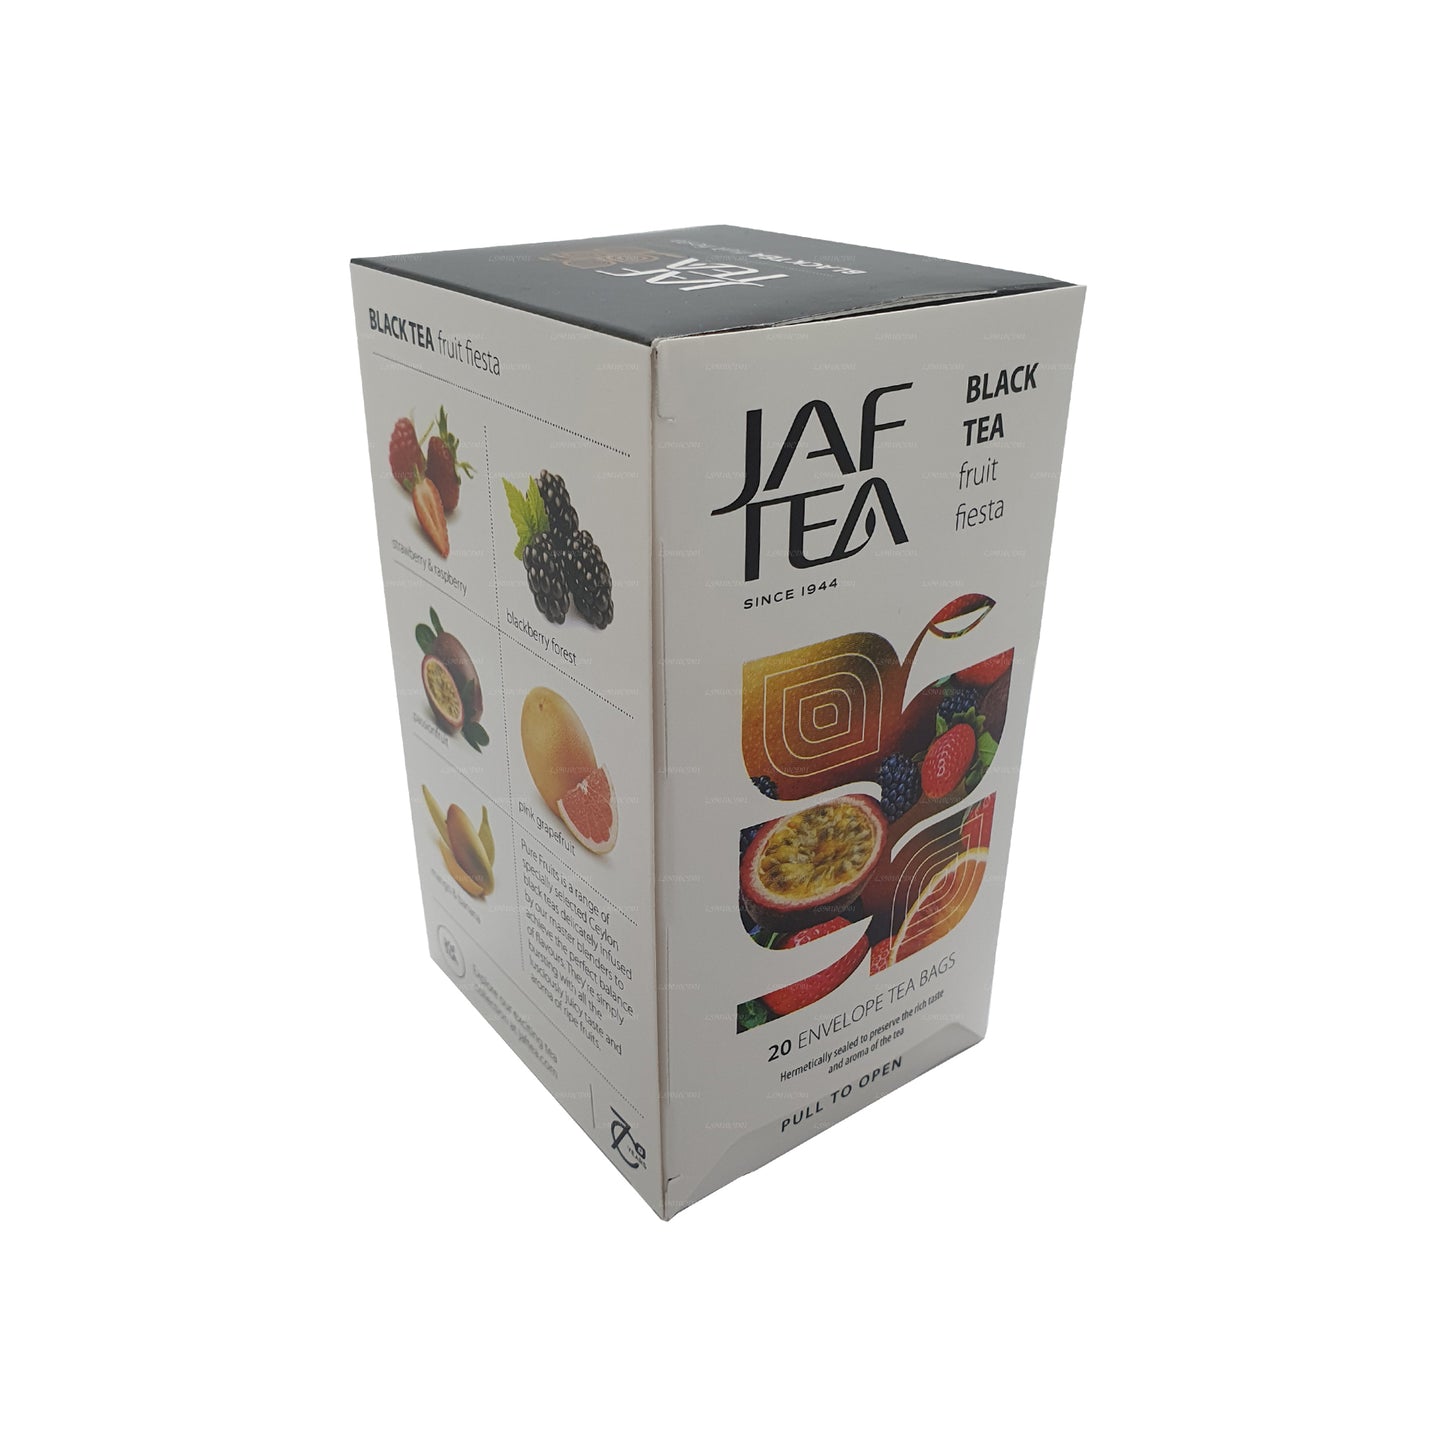 Jaf Çay Saf Meyveler Koleksiyonu Siyah Çay Meyve Fiesta (30g) 20 Çay Poşeti